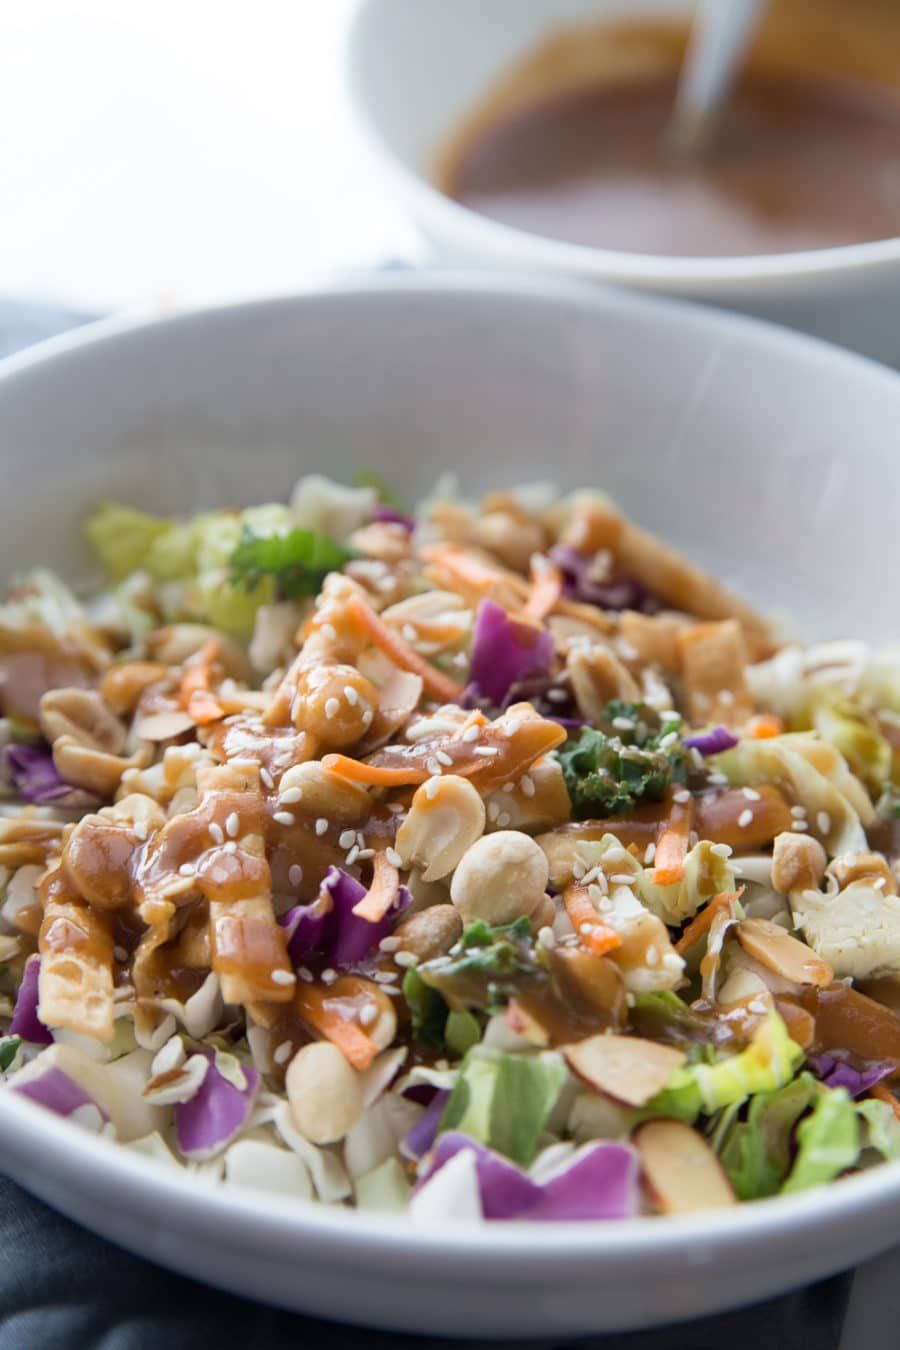 Taizemes zemesriekstu mērces receptes tuvplāns salātiem